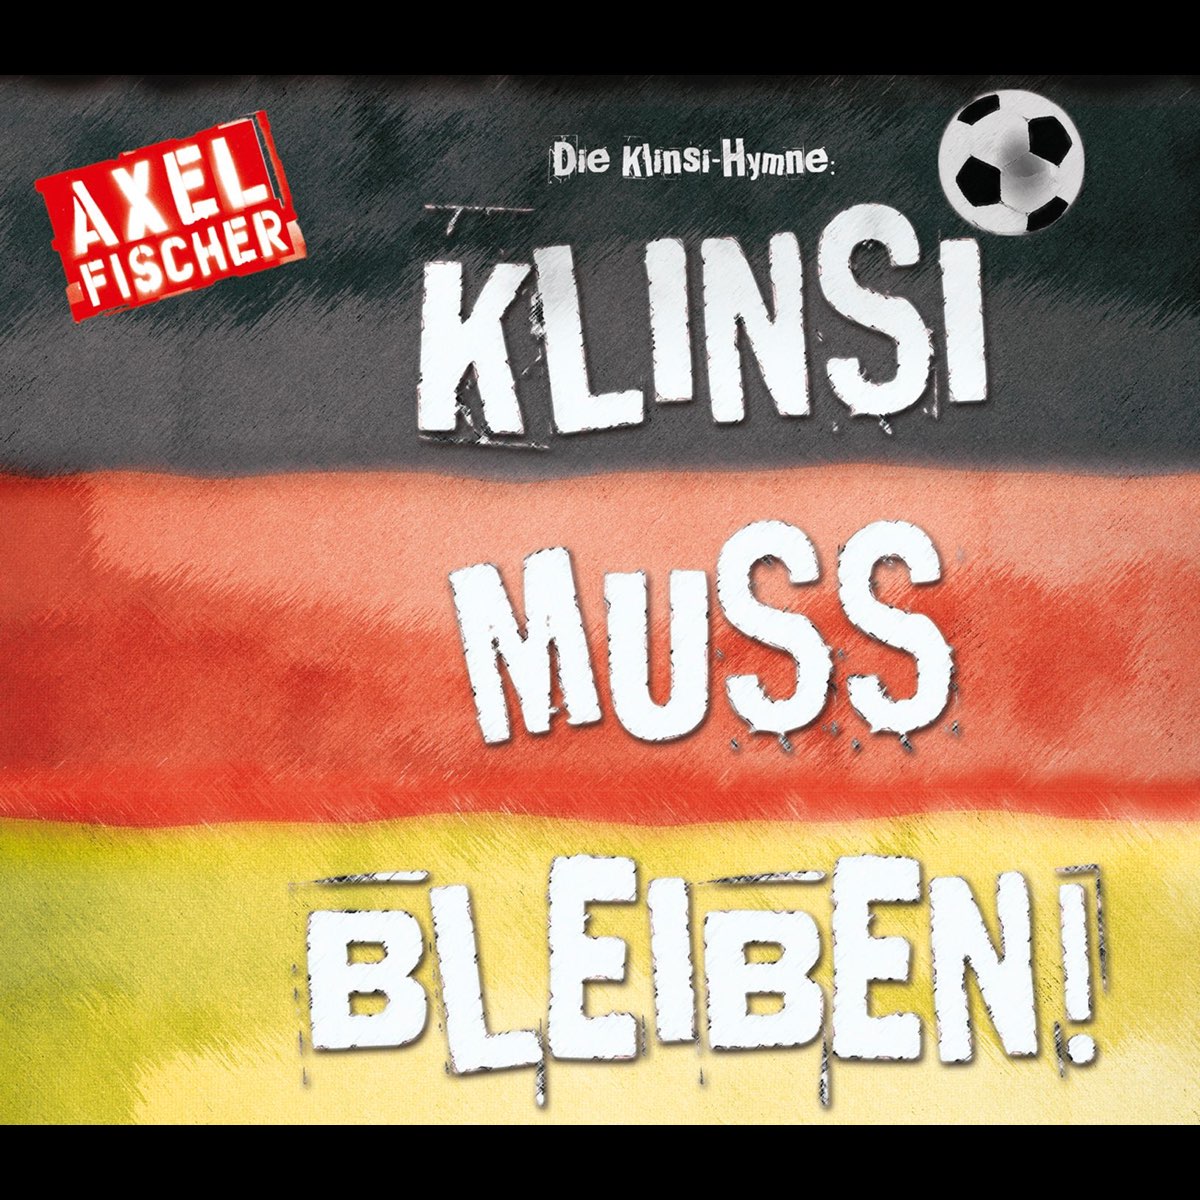 ‎Die Klinsi-Hymne: Klinsi muss bleiben - Single by Axel Fischer on ...